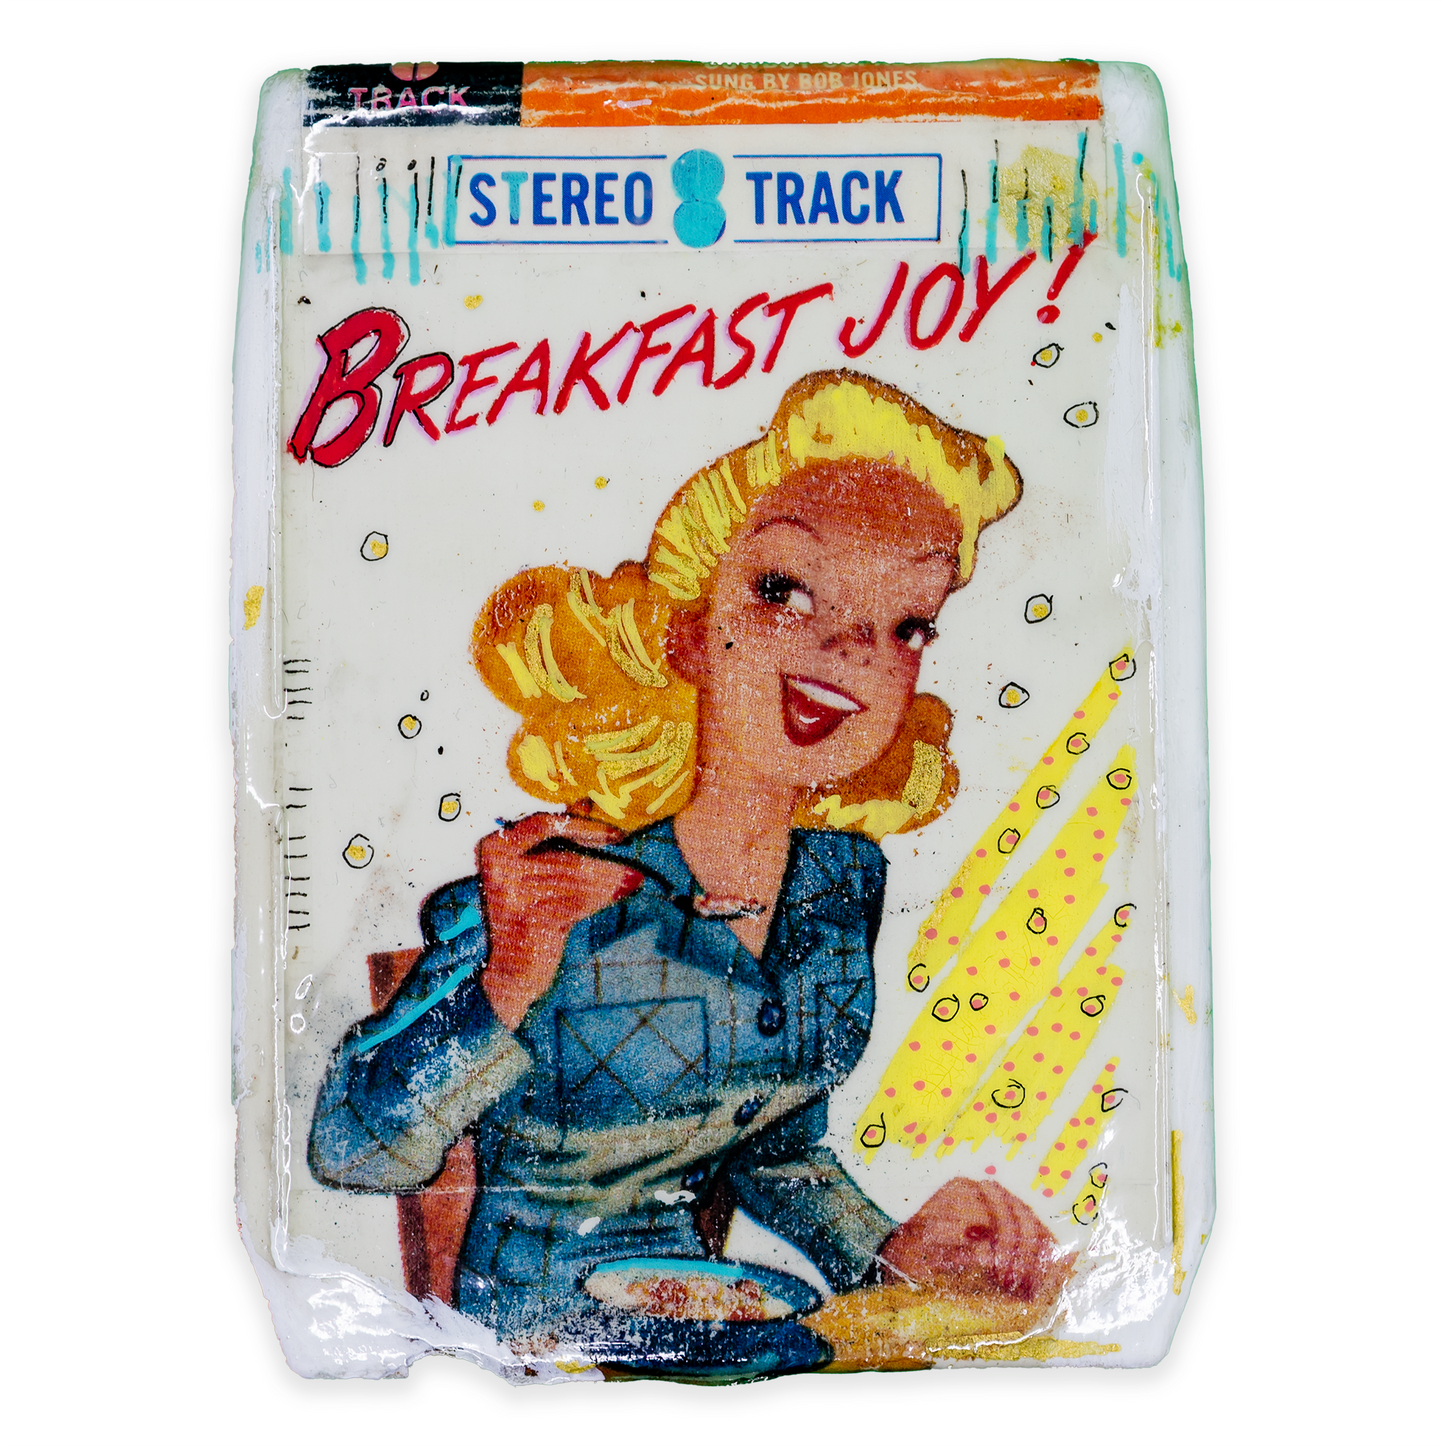 An 8 Track Breakfast Joy